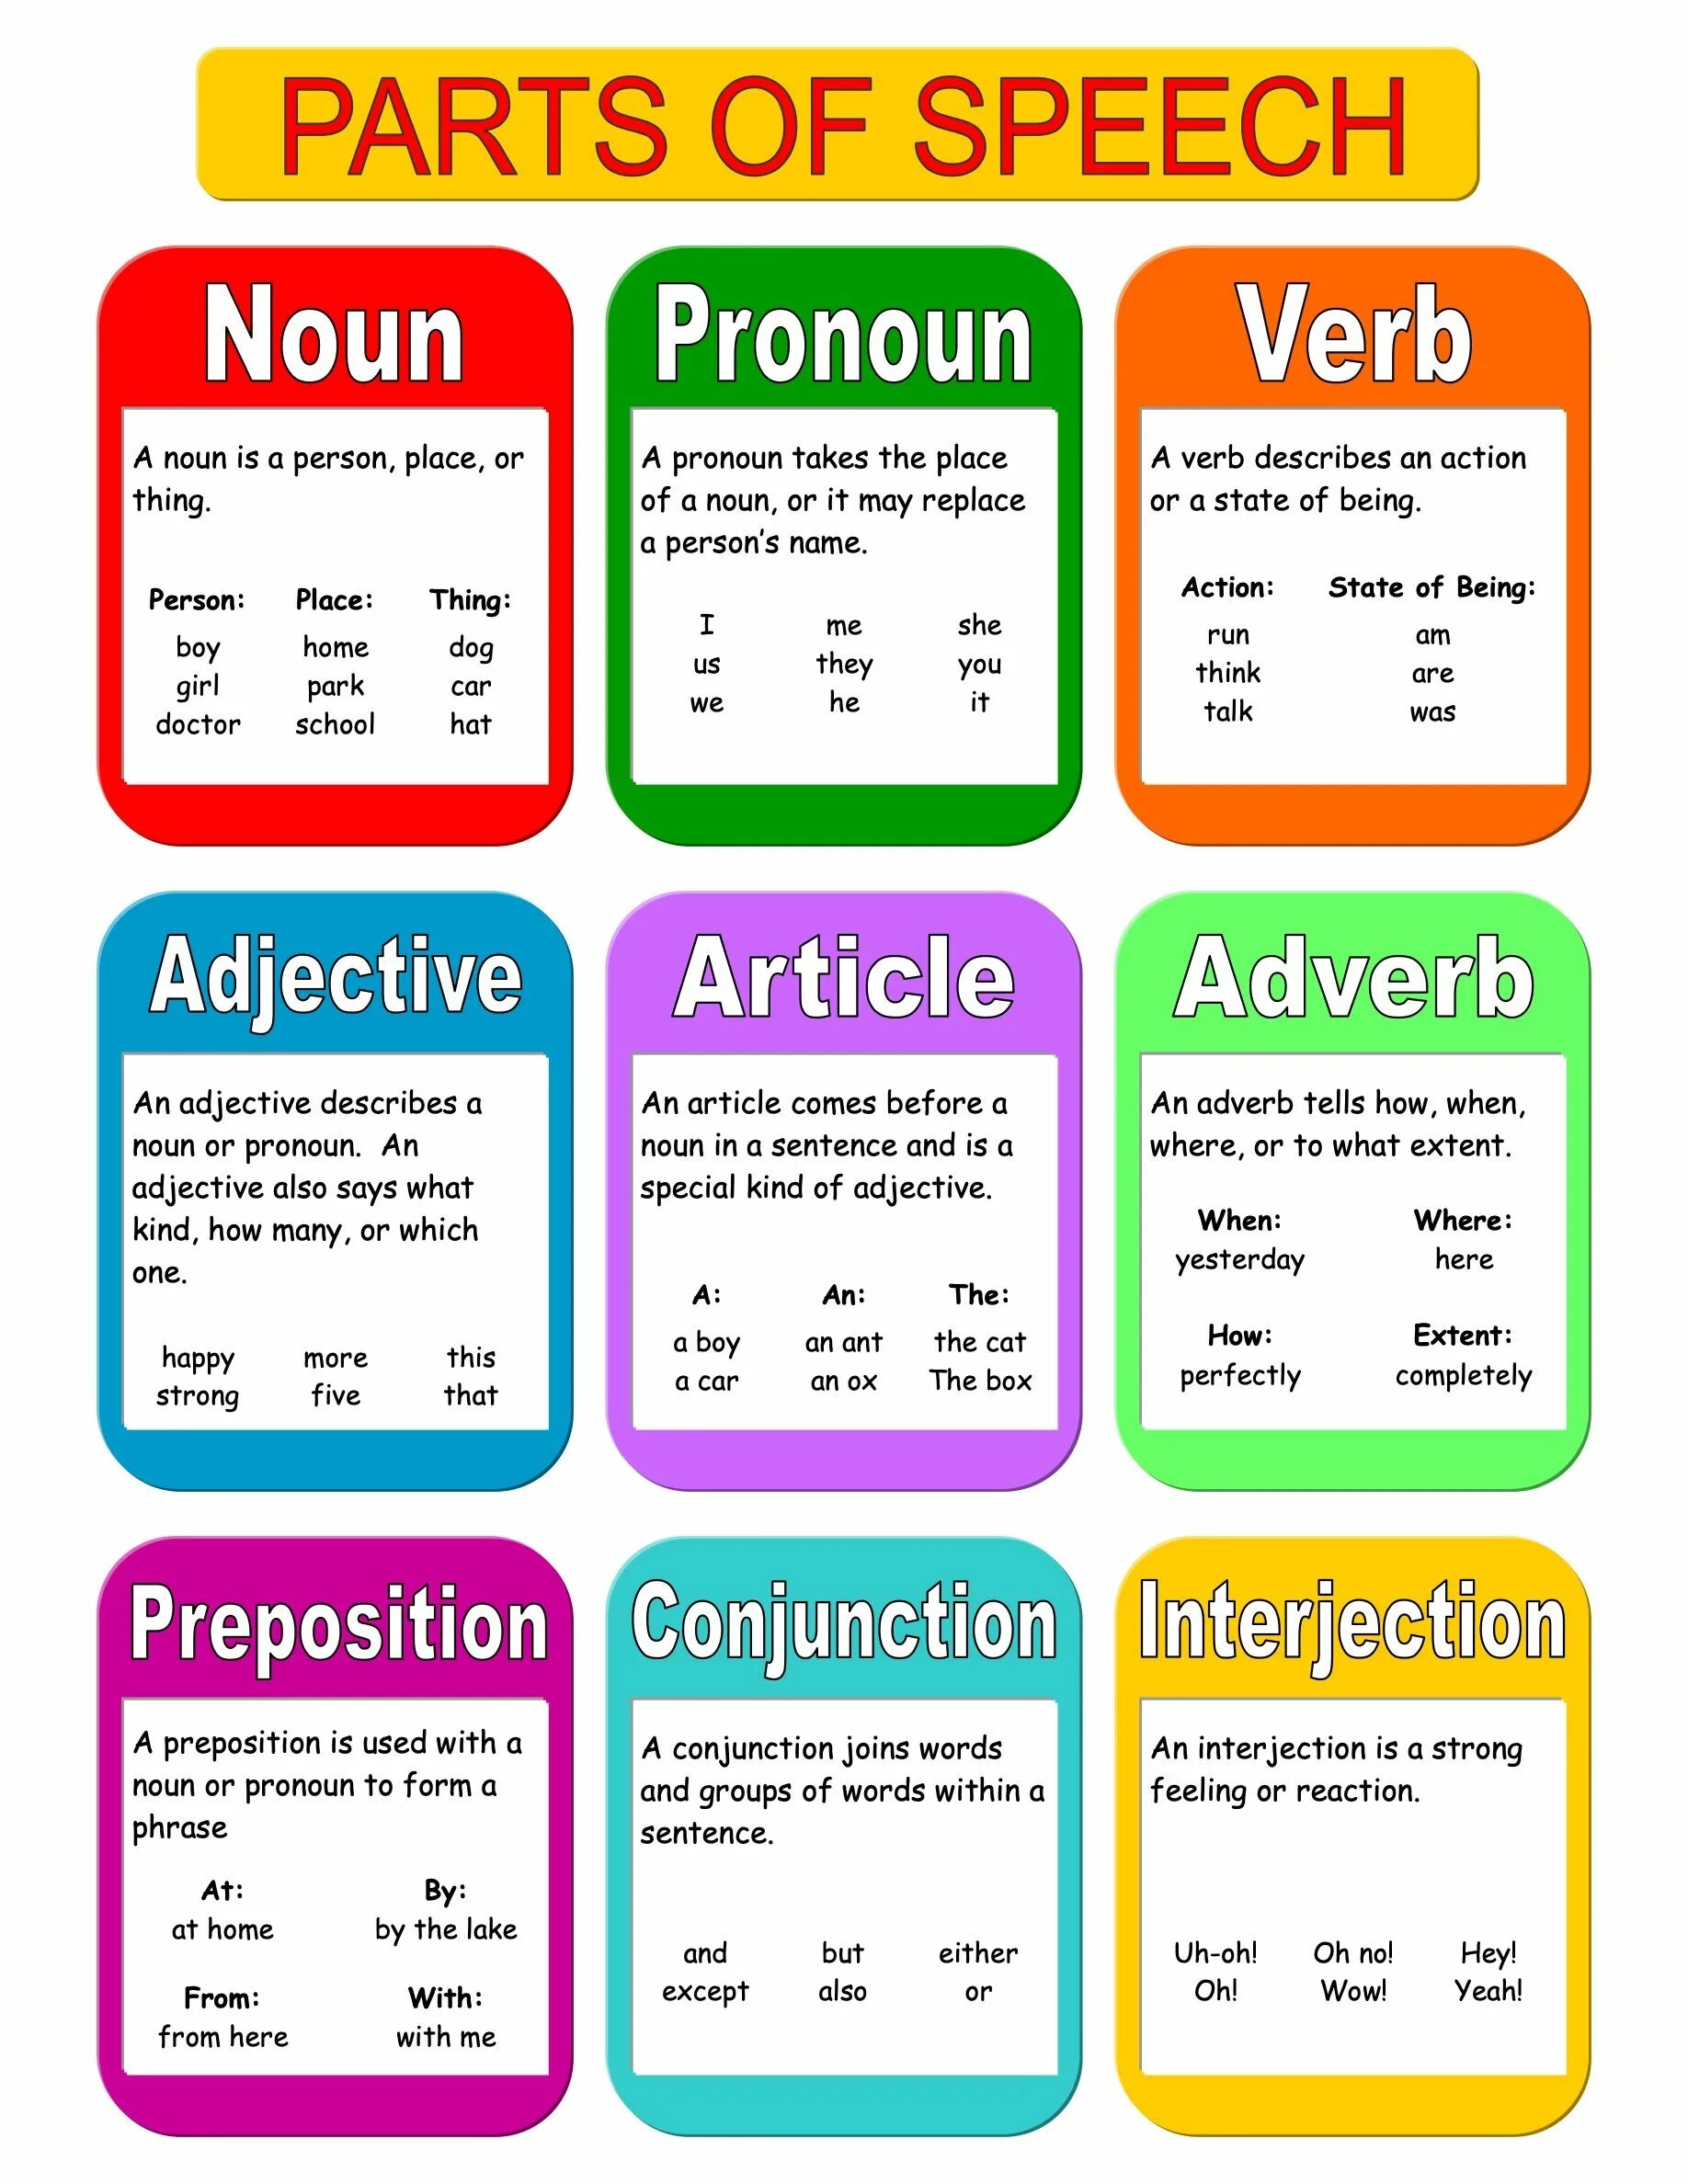 Grammar lists. Parts of Speech in English Grammar. Part of Speech таблица. Грамматика. Грамматика по английскому.